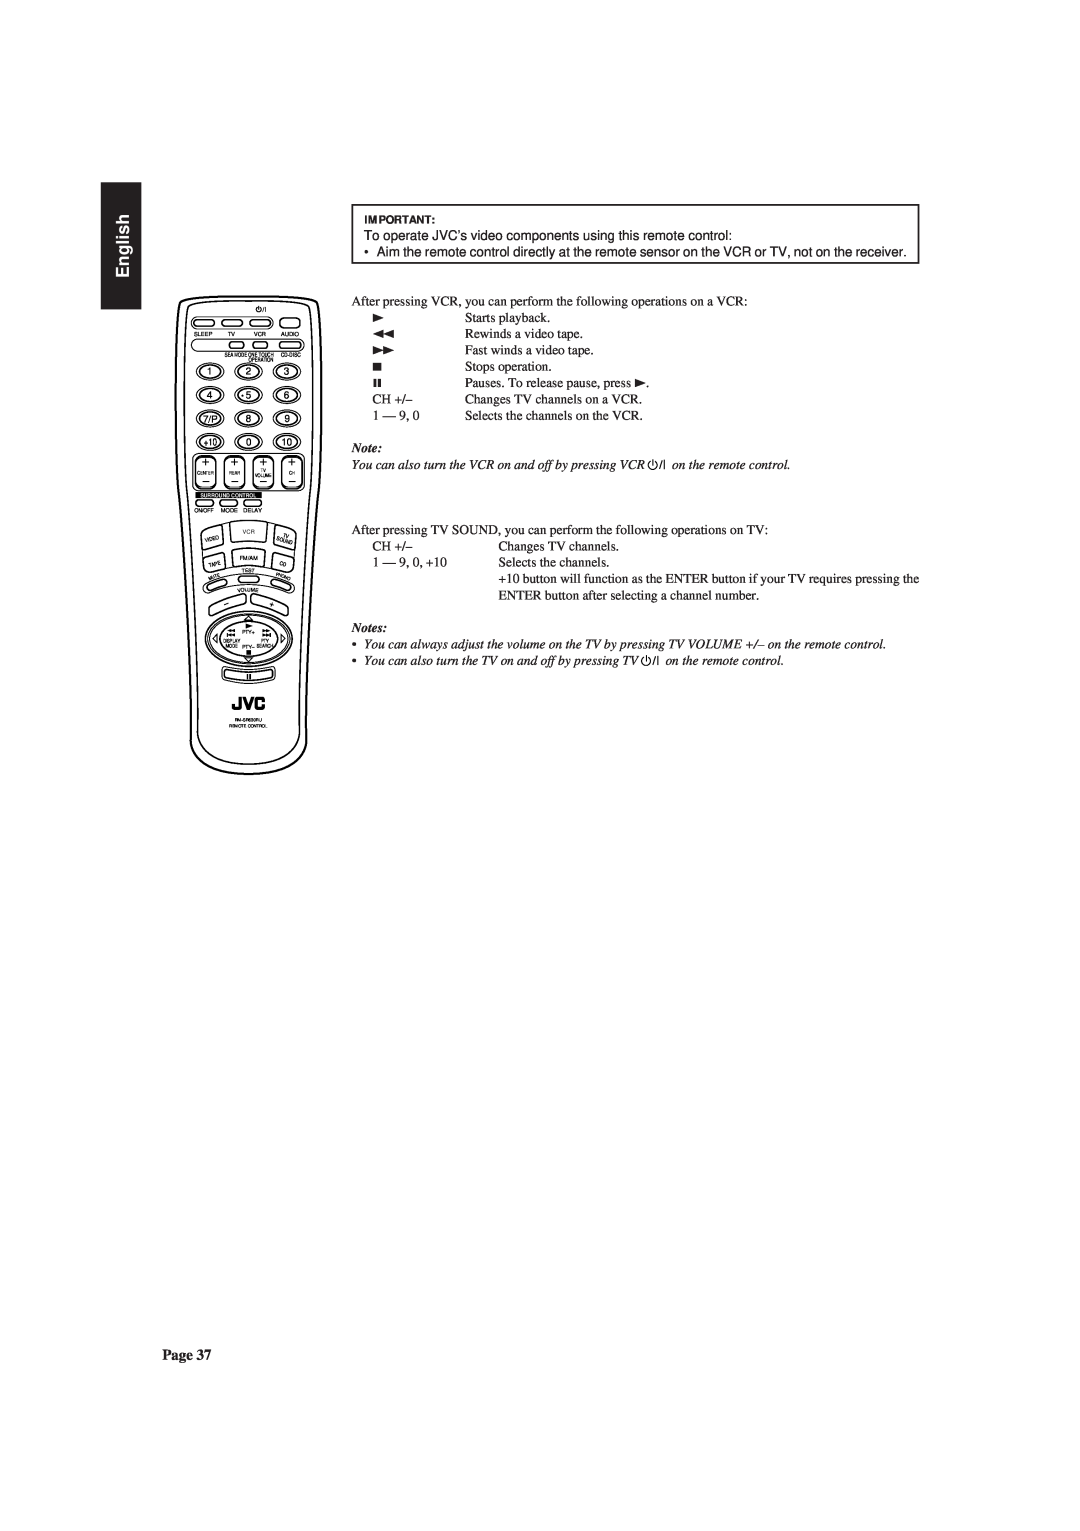 JVC RX-630RBK manual English, 1Rewinds a video tape ÁFast winds a video tape 